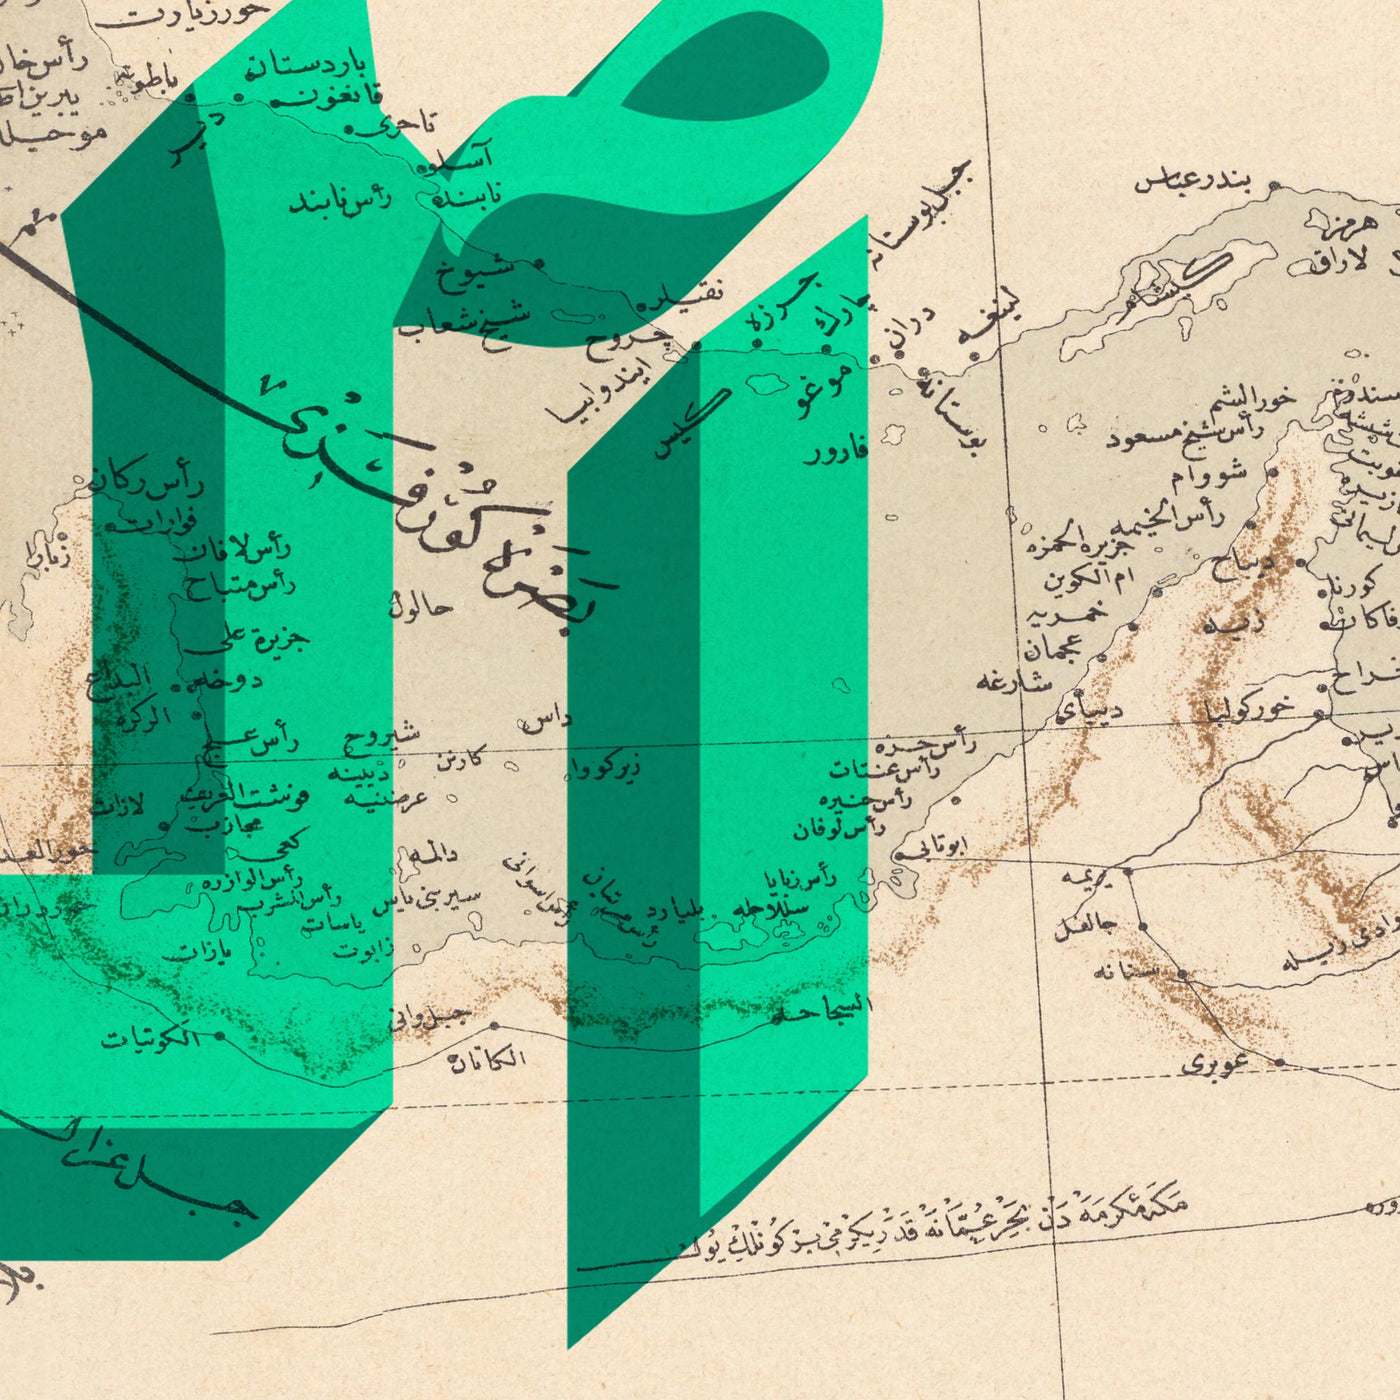 Personalisierte alte Karte: Wortkunst im Siebdruckstil